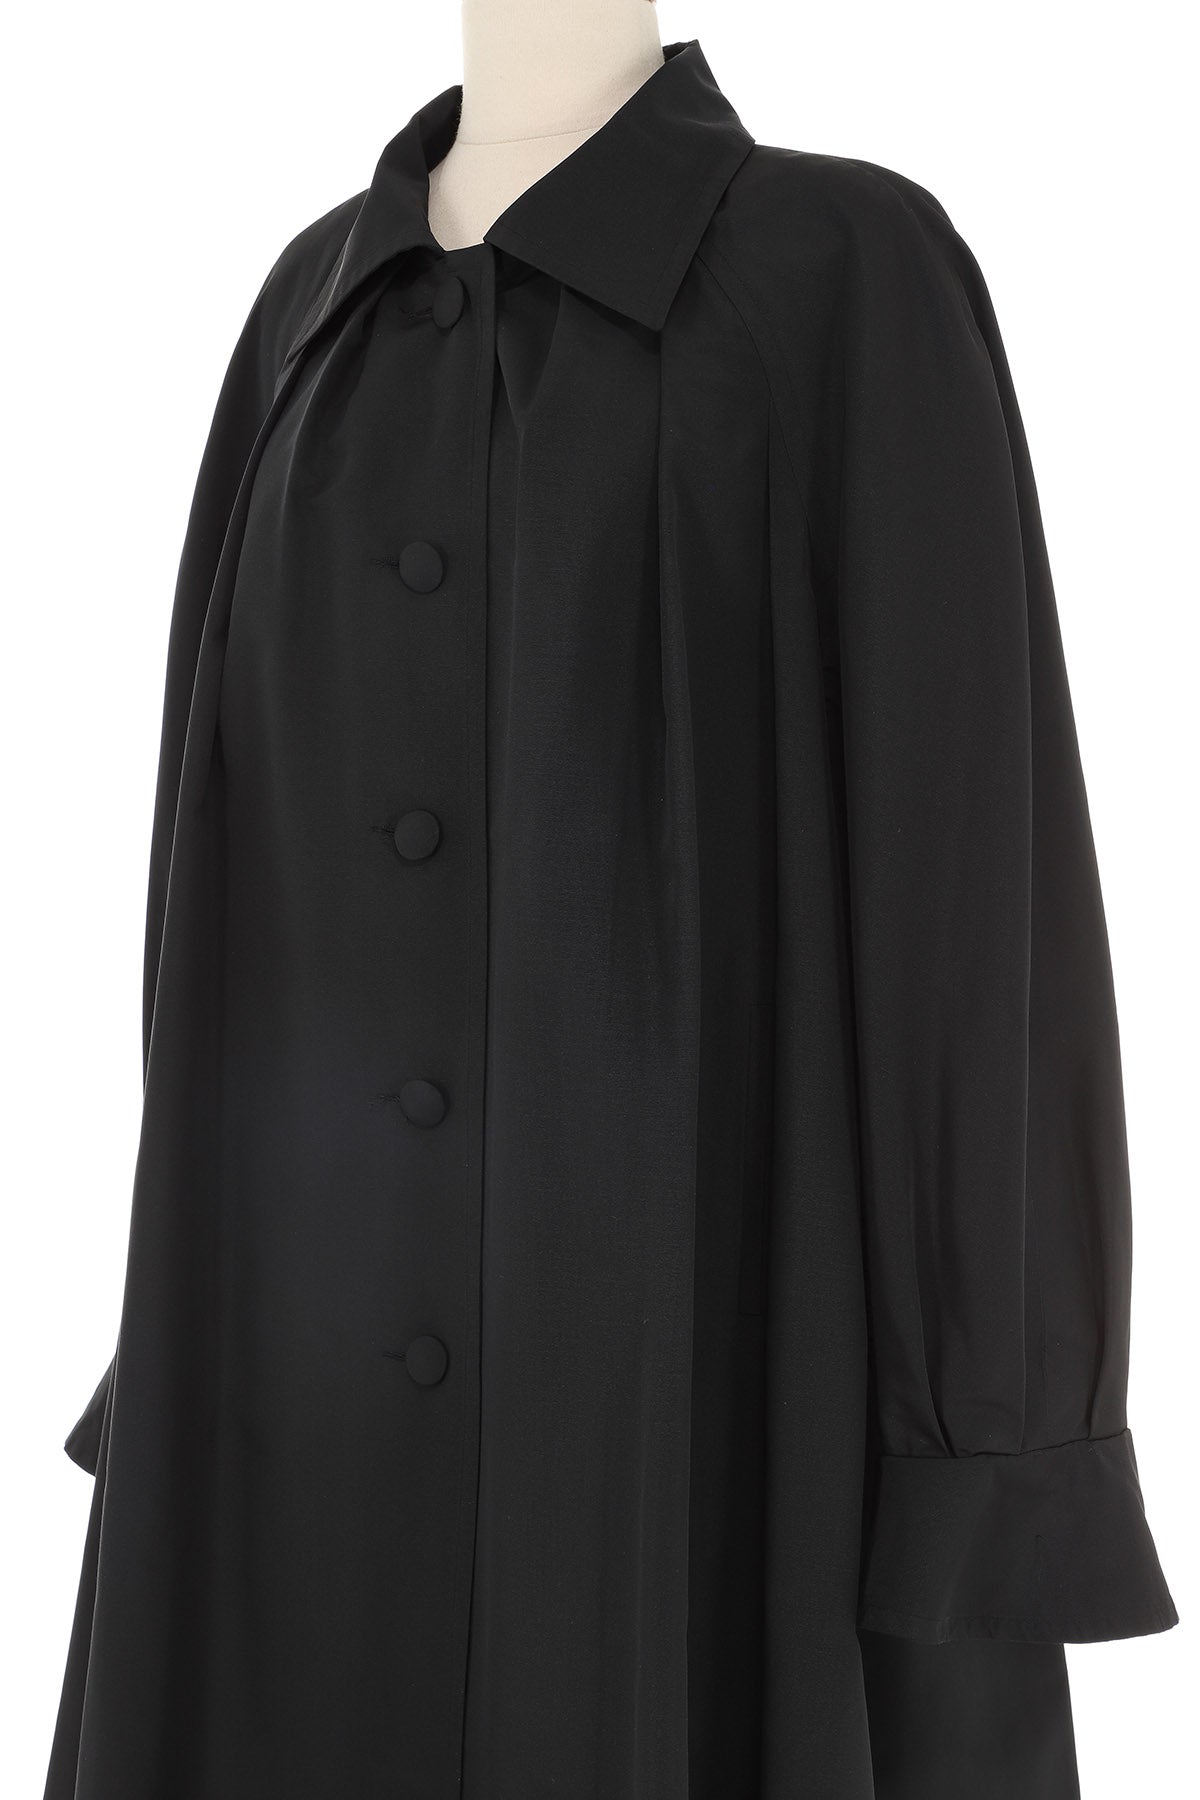 Hermès Long Nylon Black Coat